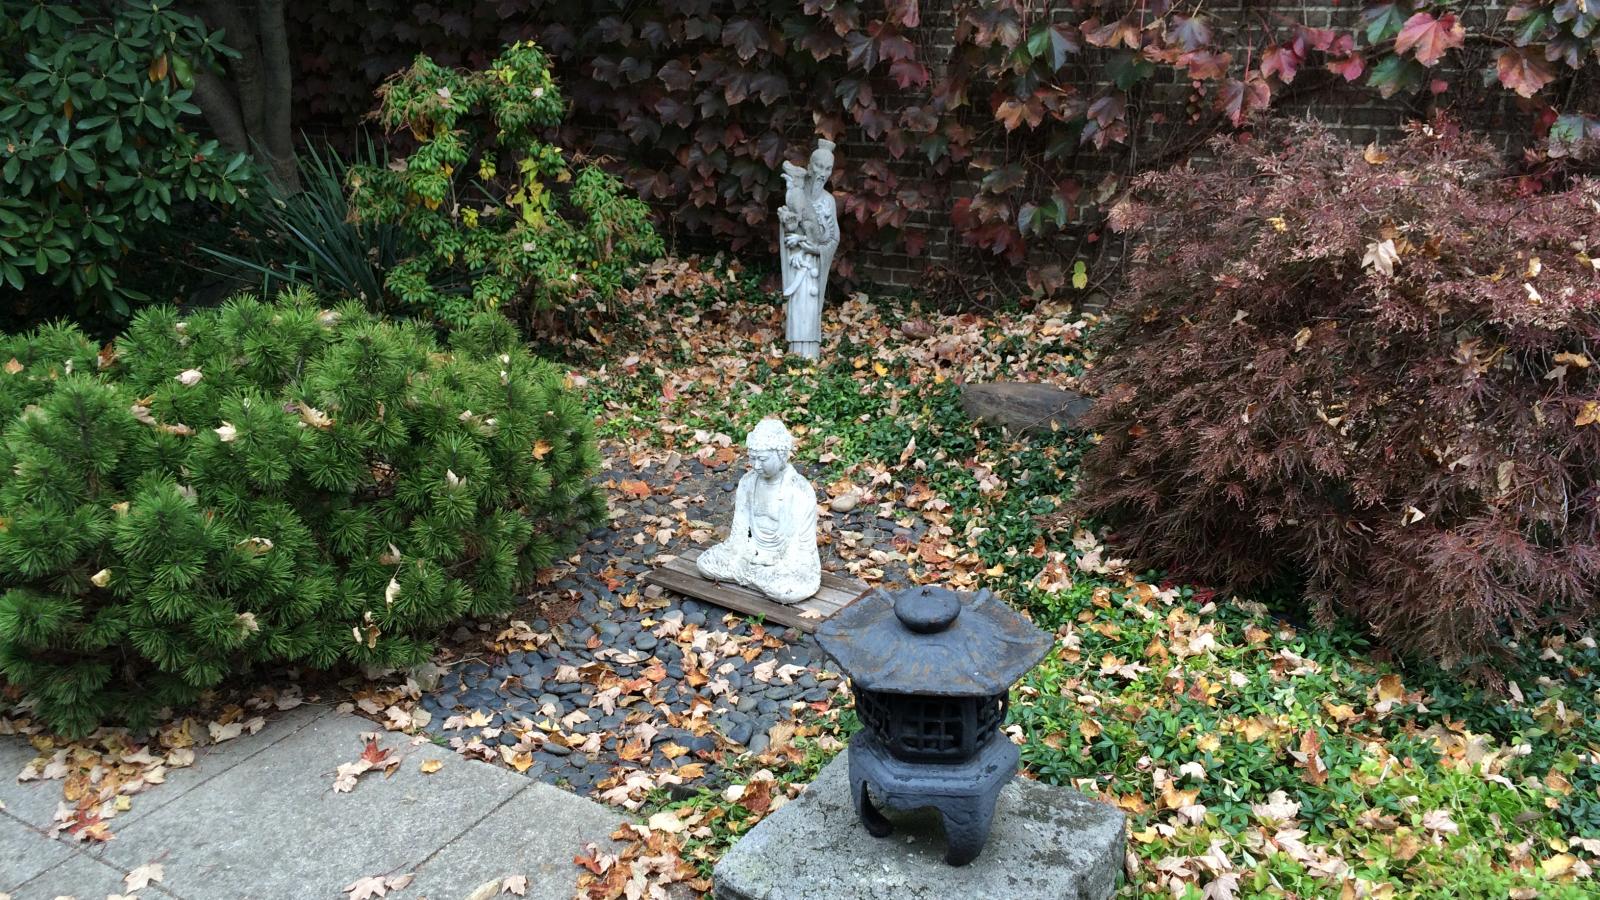 Hall opens unto the Zen Garden courtyard, the doors are left open during nice weather